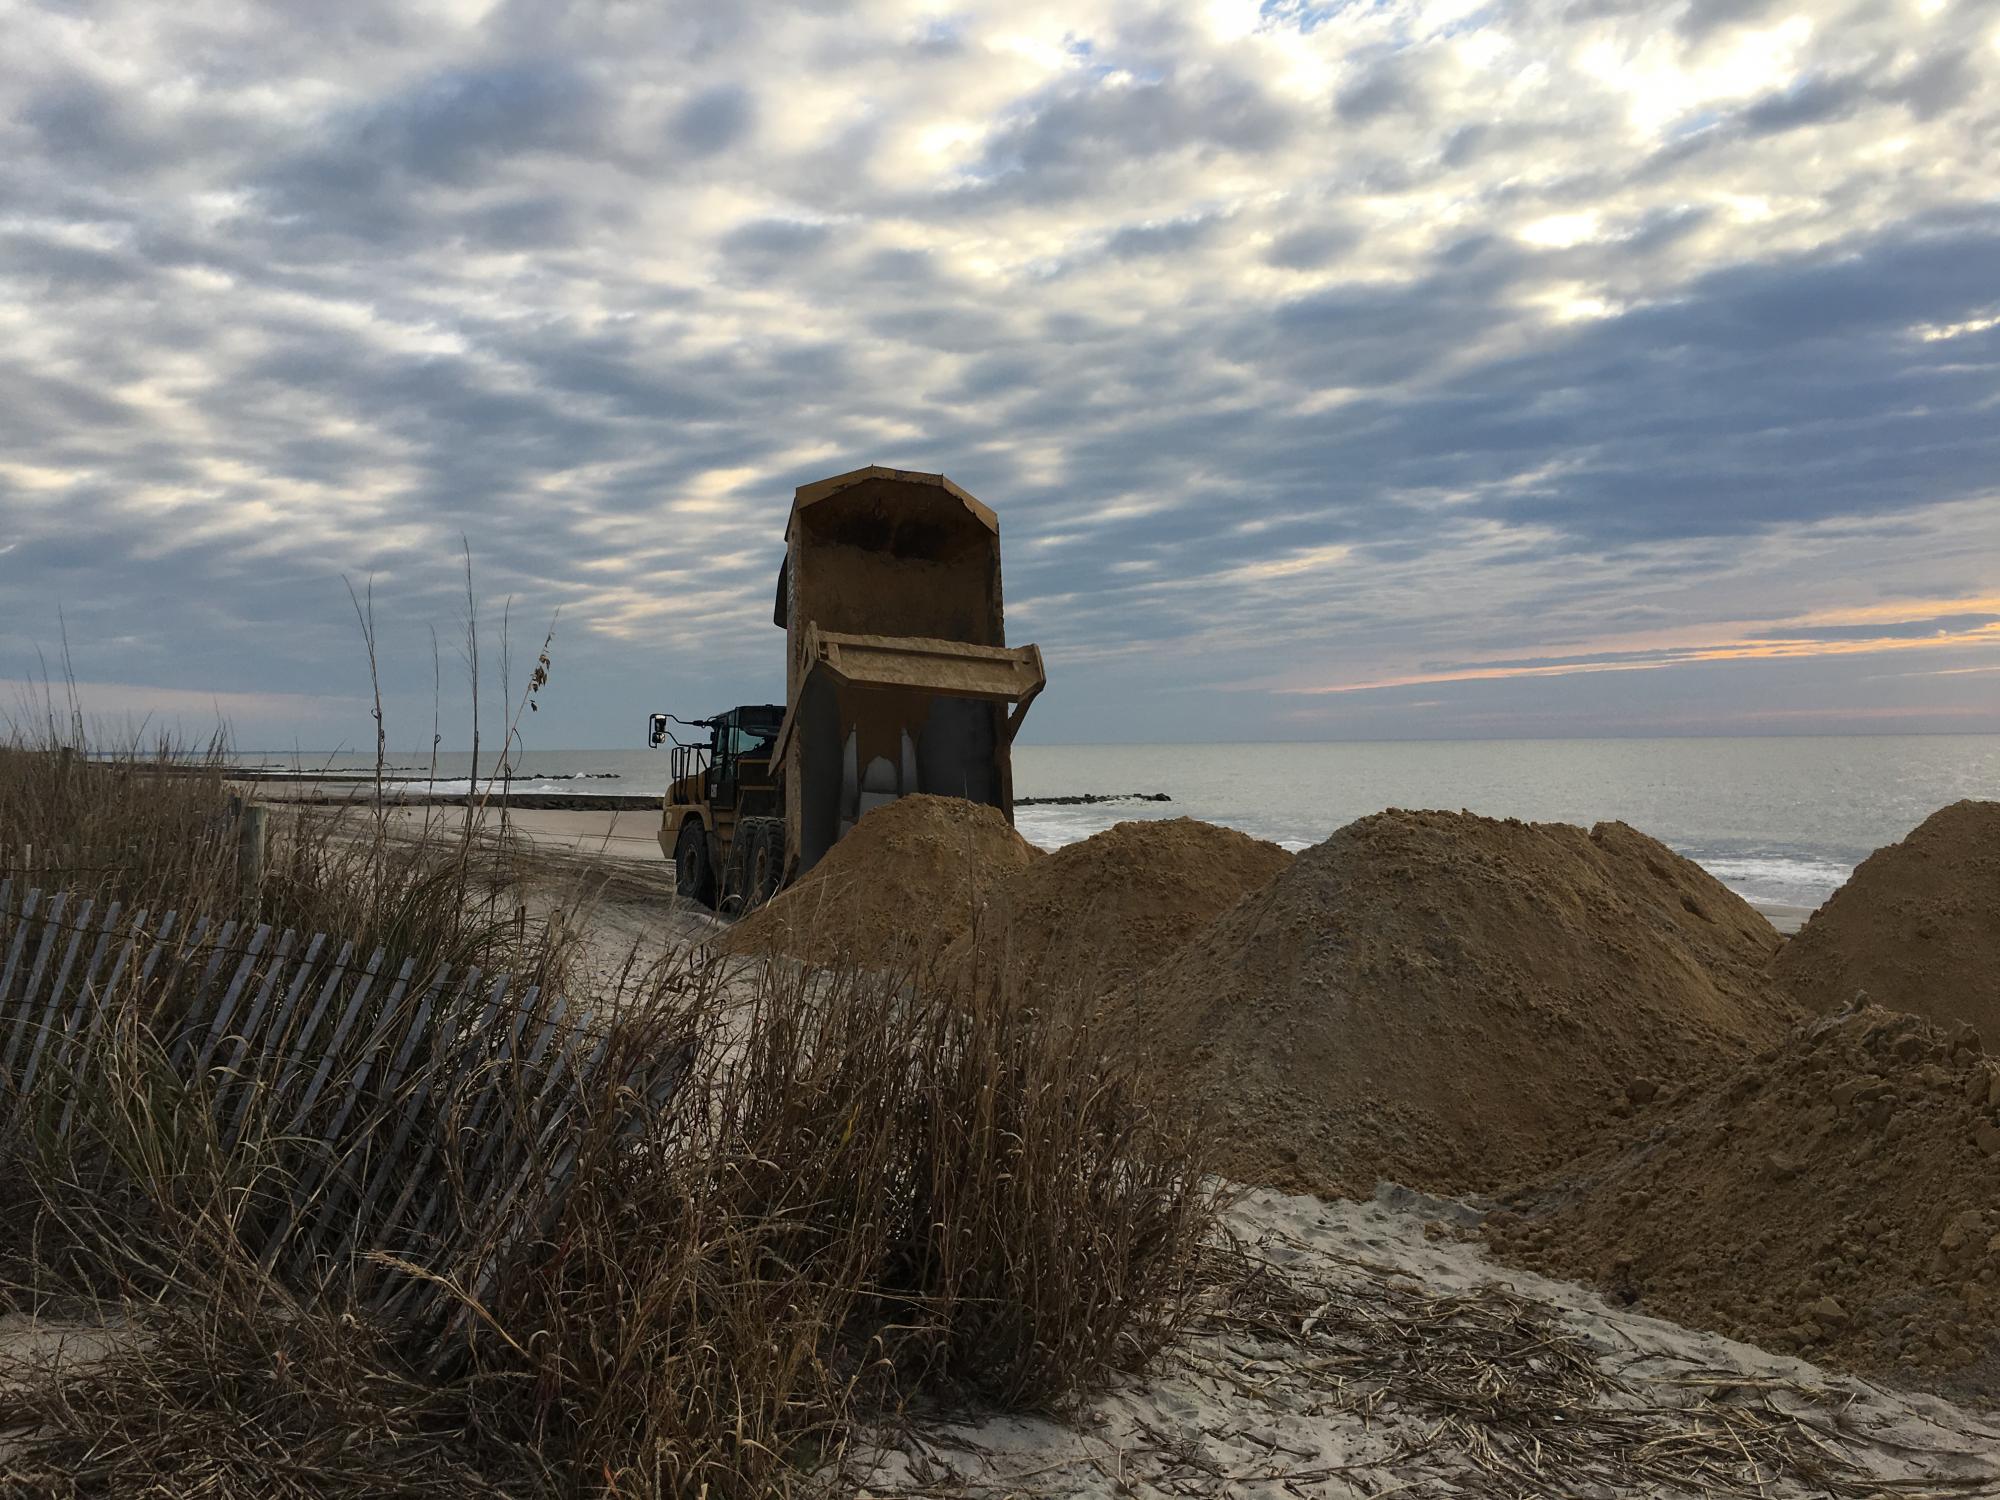 Dump Truck placing sand on beach